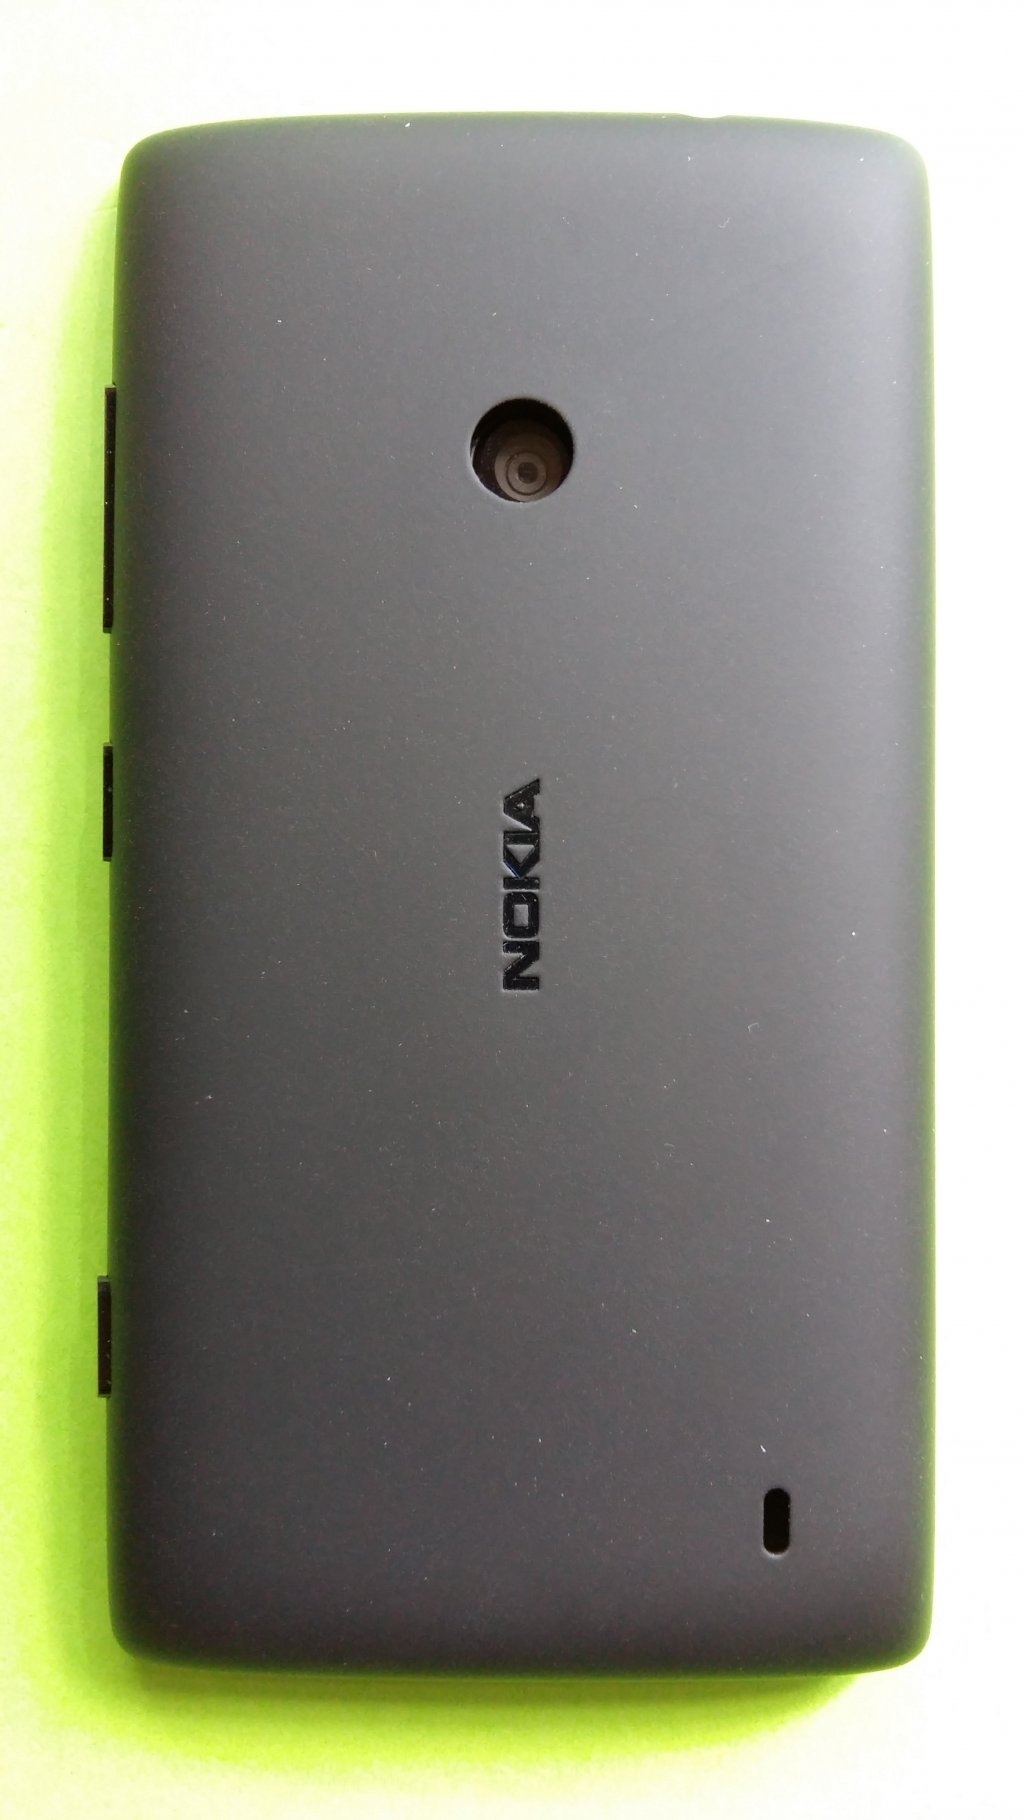 image-7430583-Nokia_520_Lumia_(2)2.w640.jpg